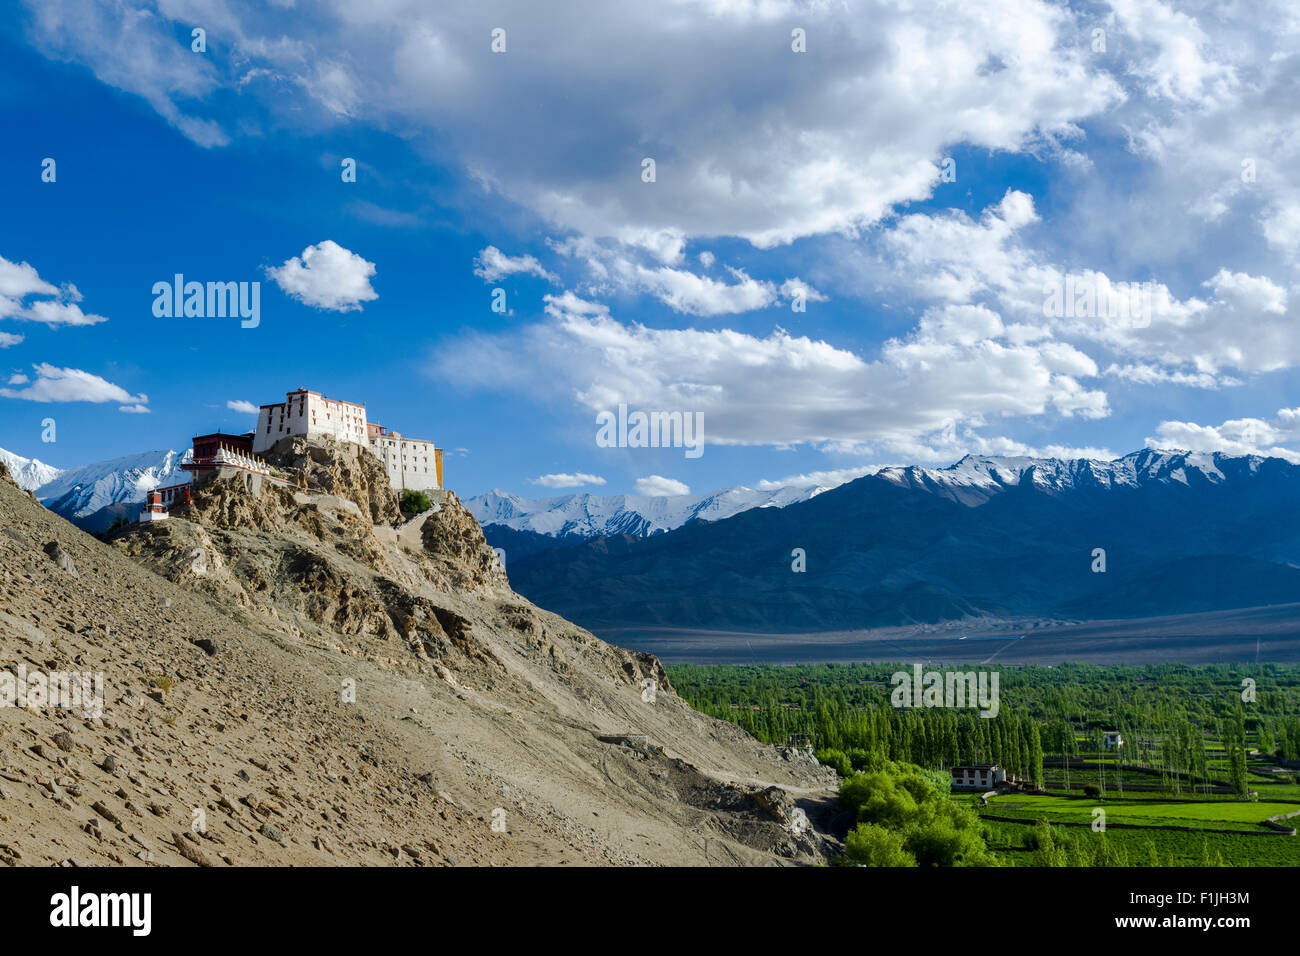 Thiksey Gompa sur une colline au-dessus de la vallée de l'Indus, enneigés des montagnes au loin, Thiksey, Jammu-et-Cachemire, l'Inde Banque D'Images